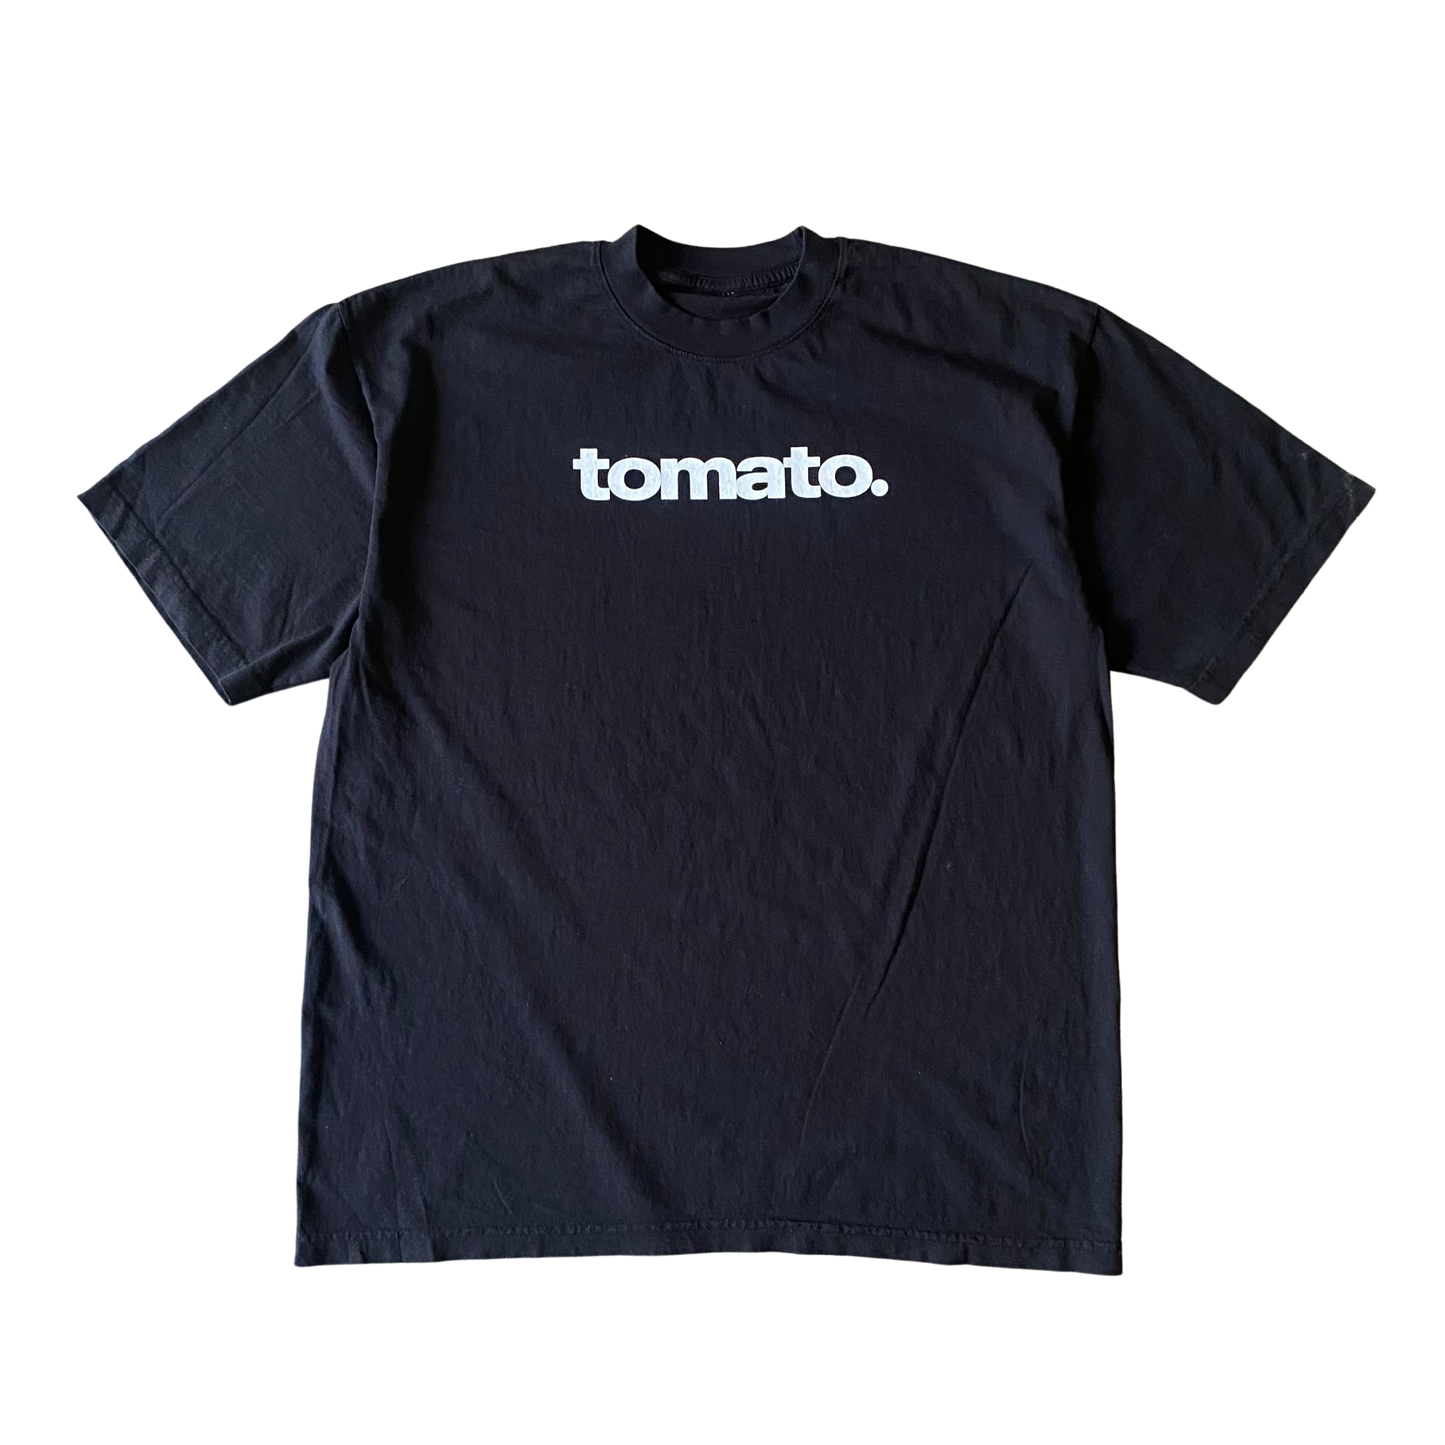 Tomato. Text Tee